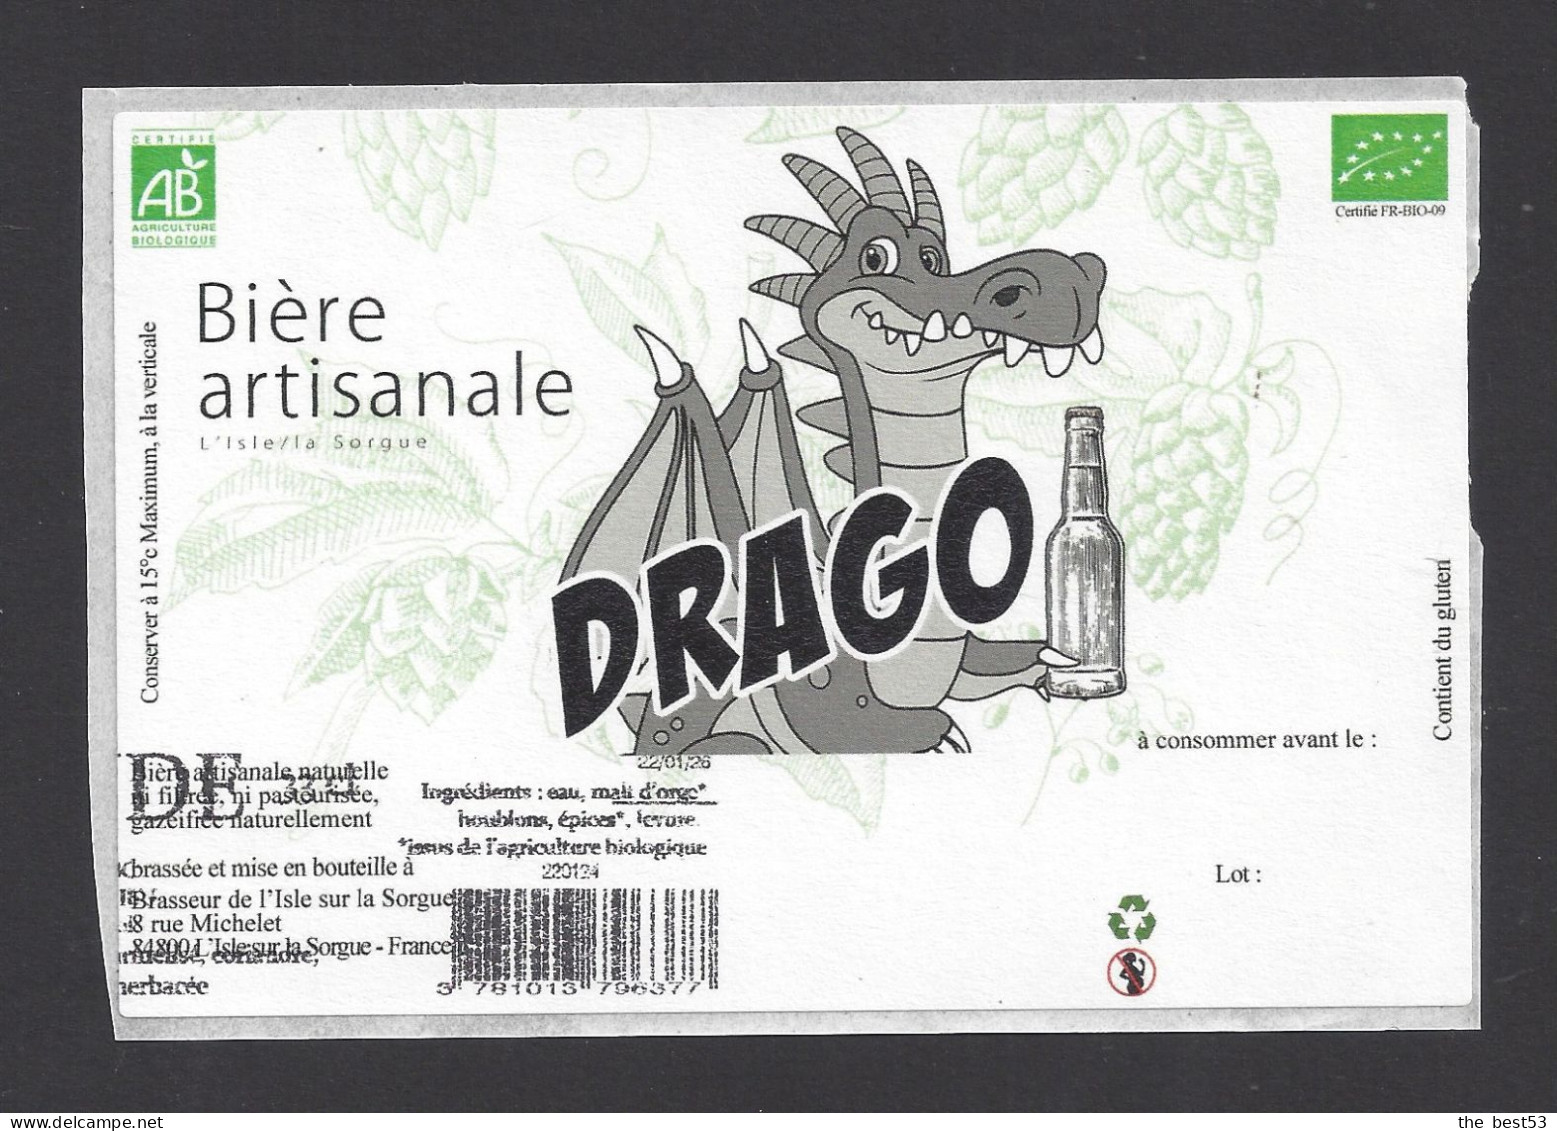 Etiquette De Bière  -  Drago  -  Brasserie  De L'Isle Sur La Sorgue (84) - Bier